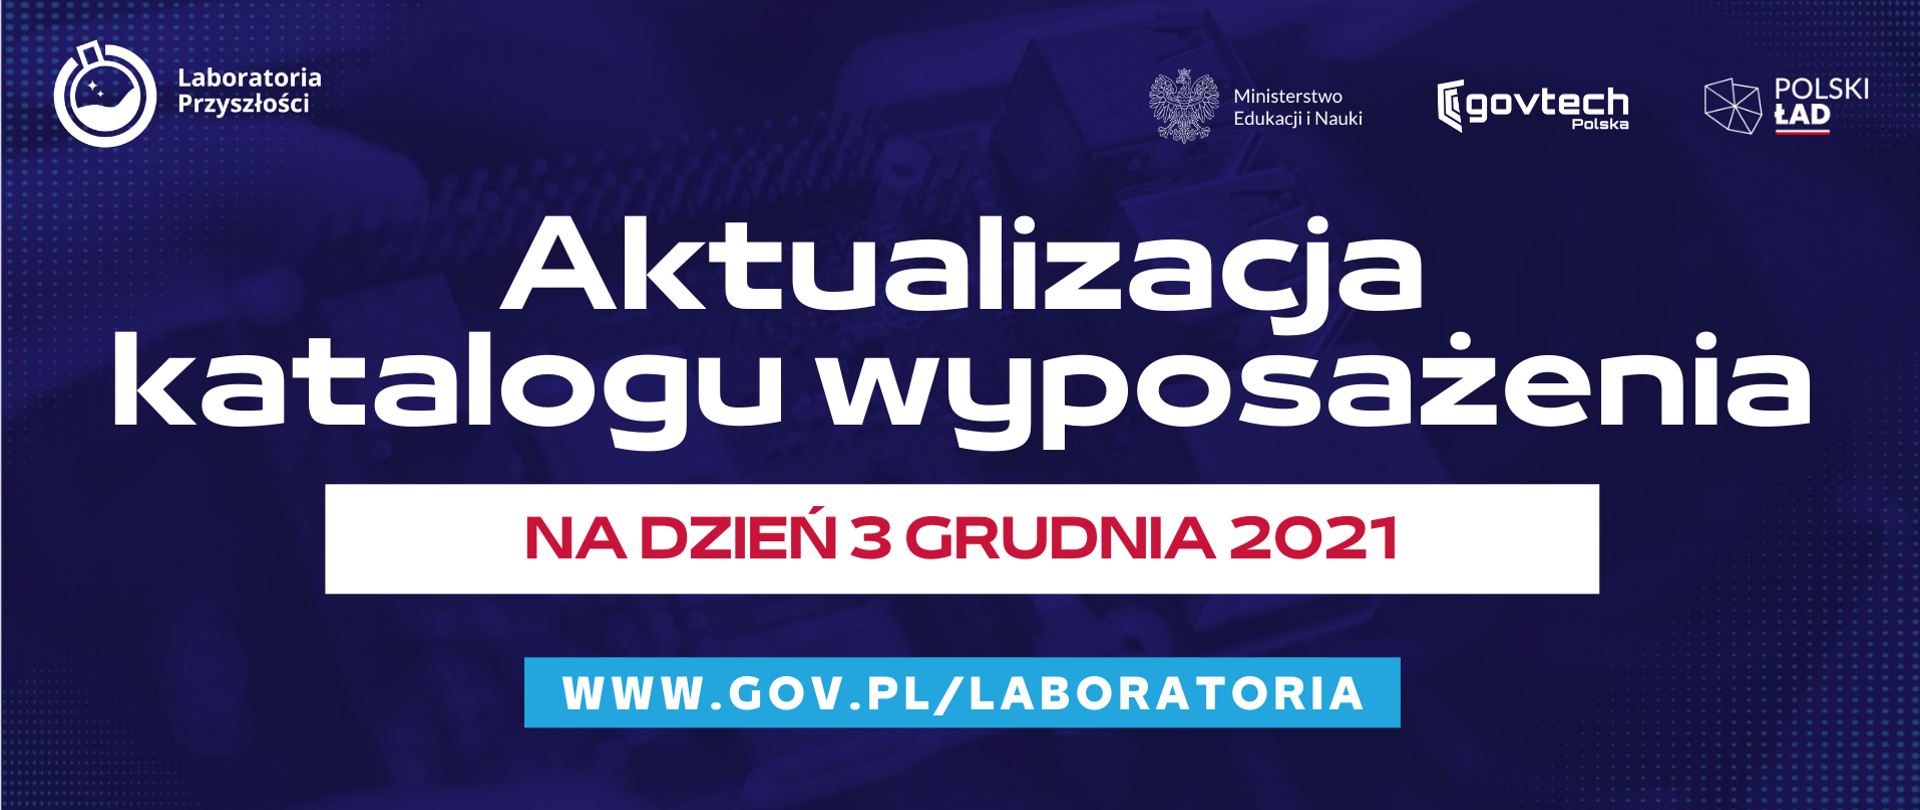 Aktualizacja katalogu wyposażenia na dzień 3 grudnia 2021
www.gov.pl/laboratoria